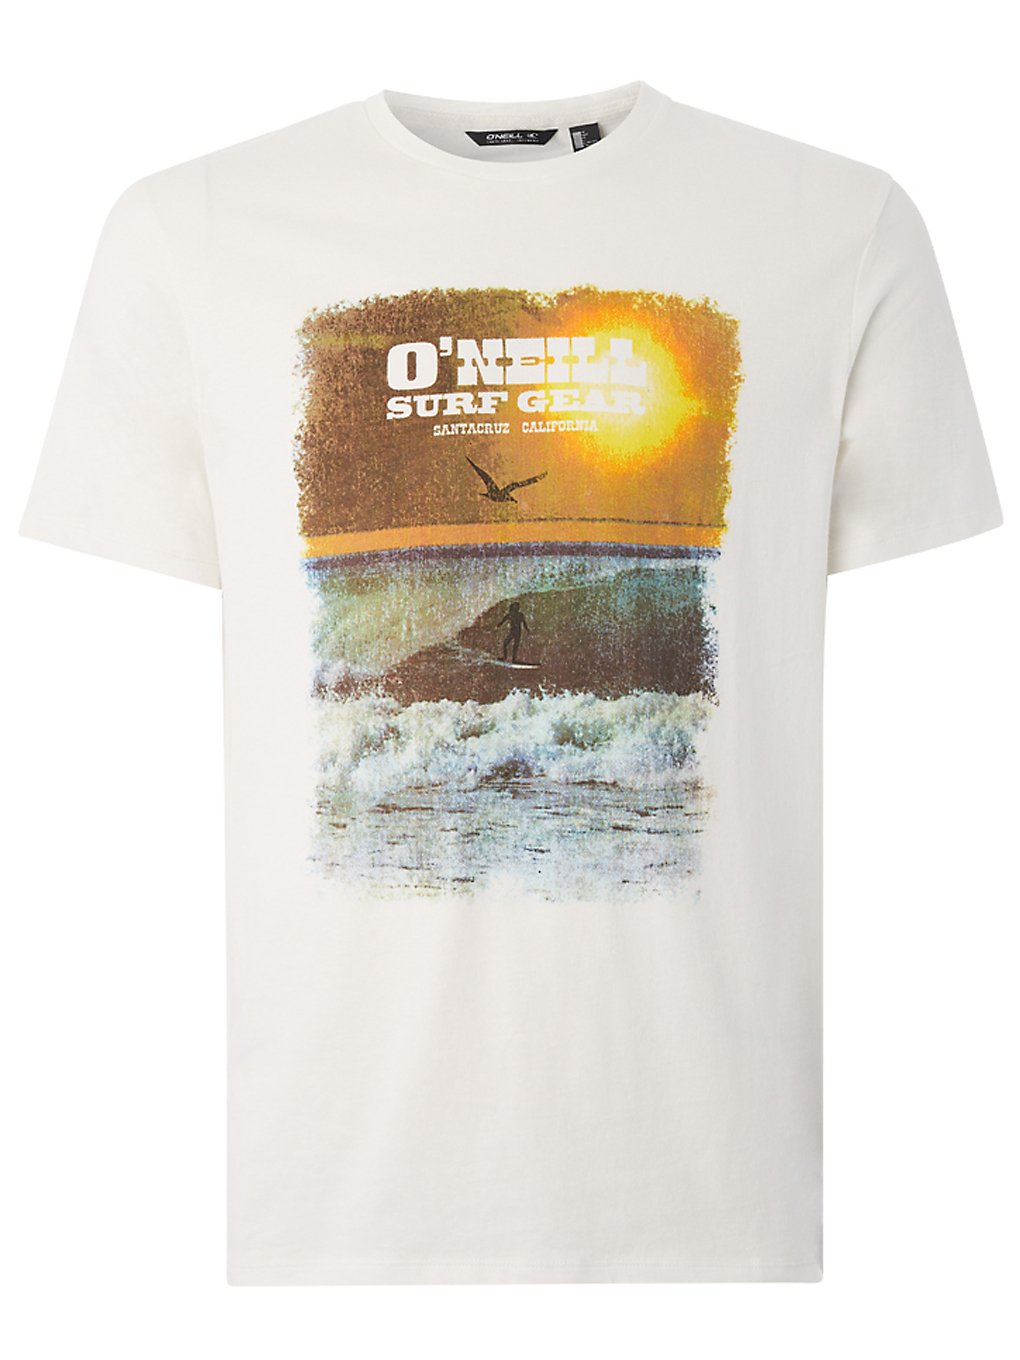 O'neill surf gear t-shirt valkoinen, o'neill